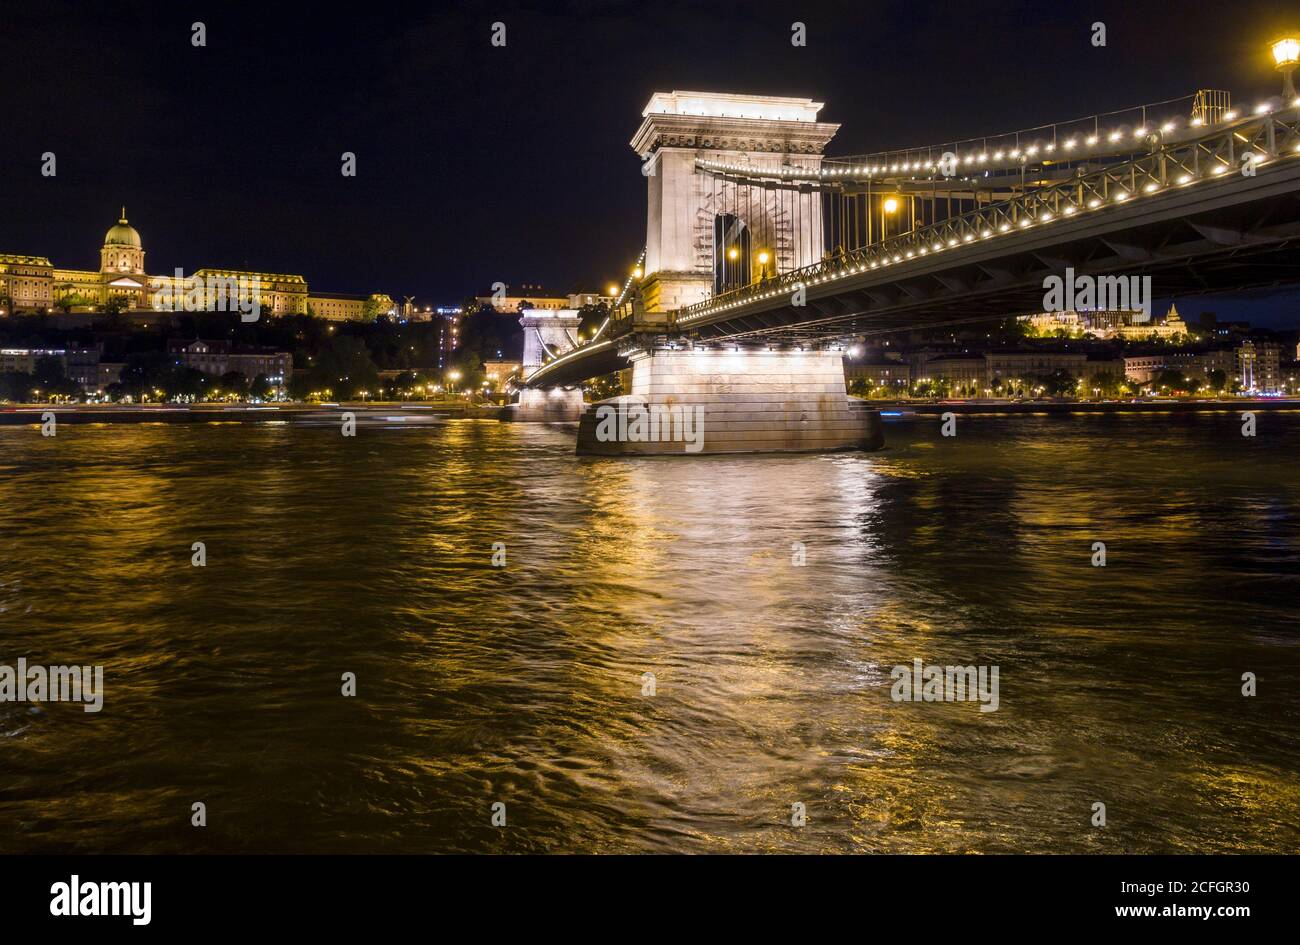 Pont à chaînes sur le Danube la nuit : le pont à chaînes Széchenyi dans le centre de Budapest avec le Palais et Buda en arrière-plan, tous éclairés la nuit. Banque D'Images